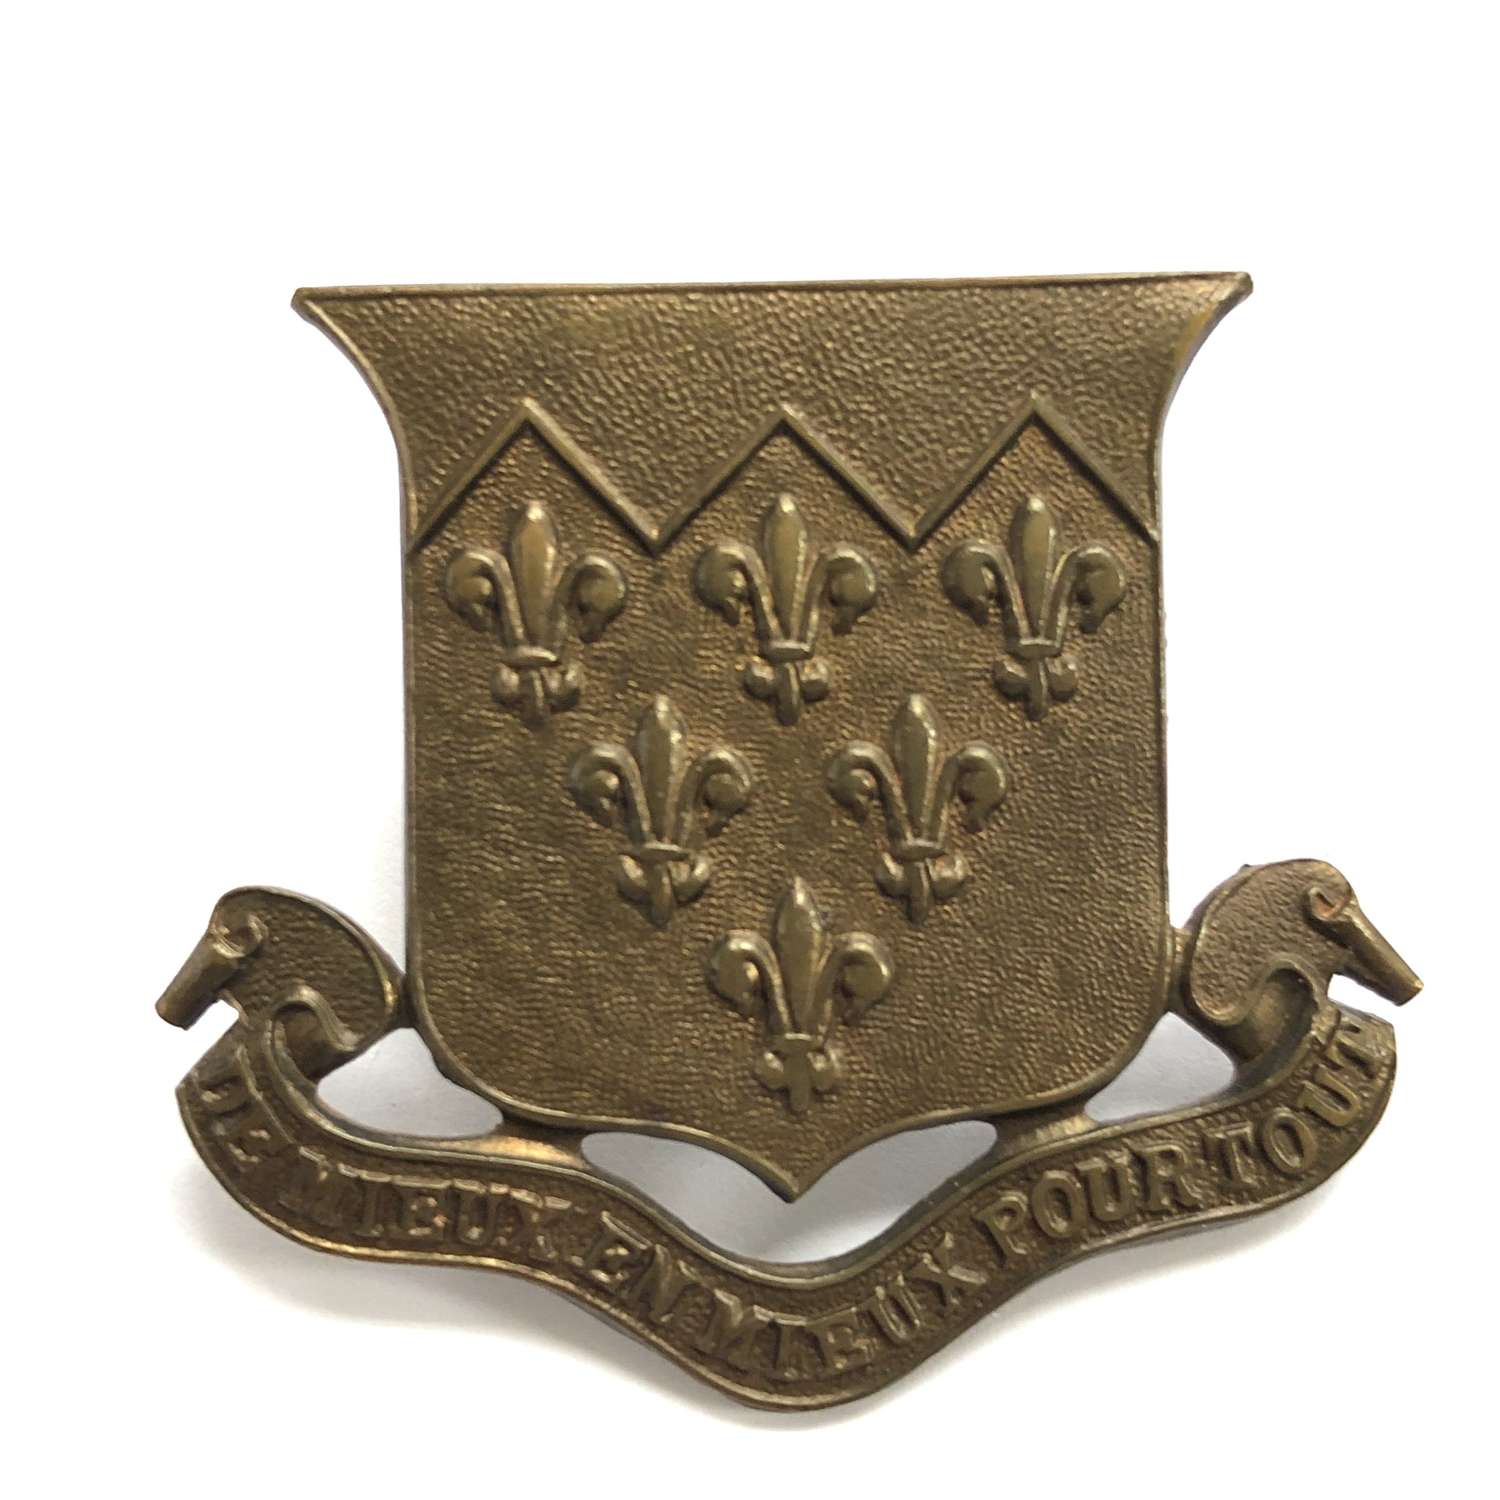 The Paston School OTC, Norfolk cap badge